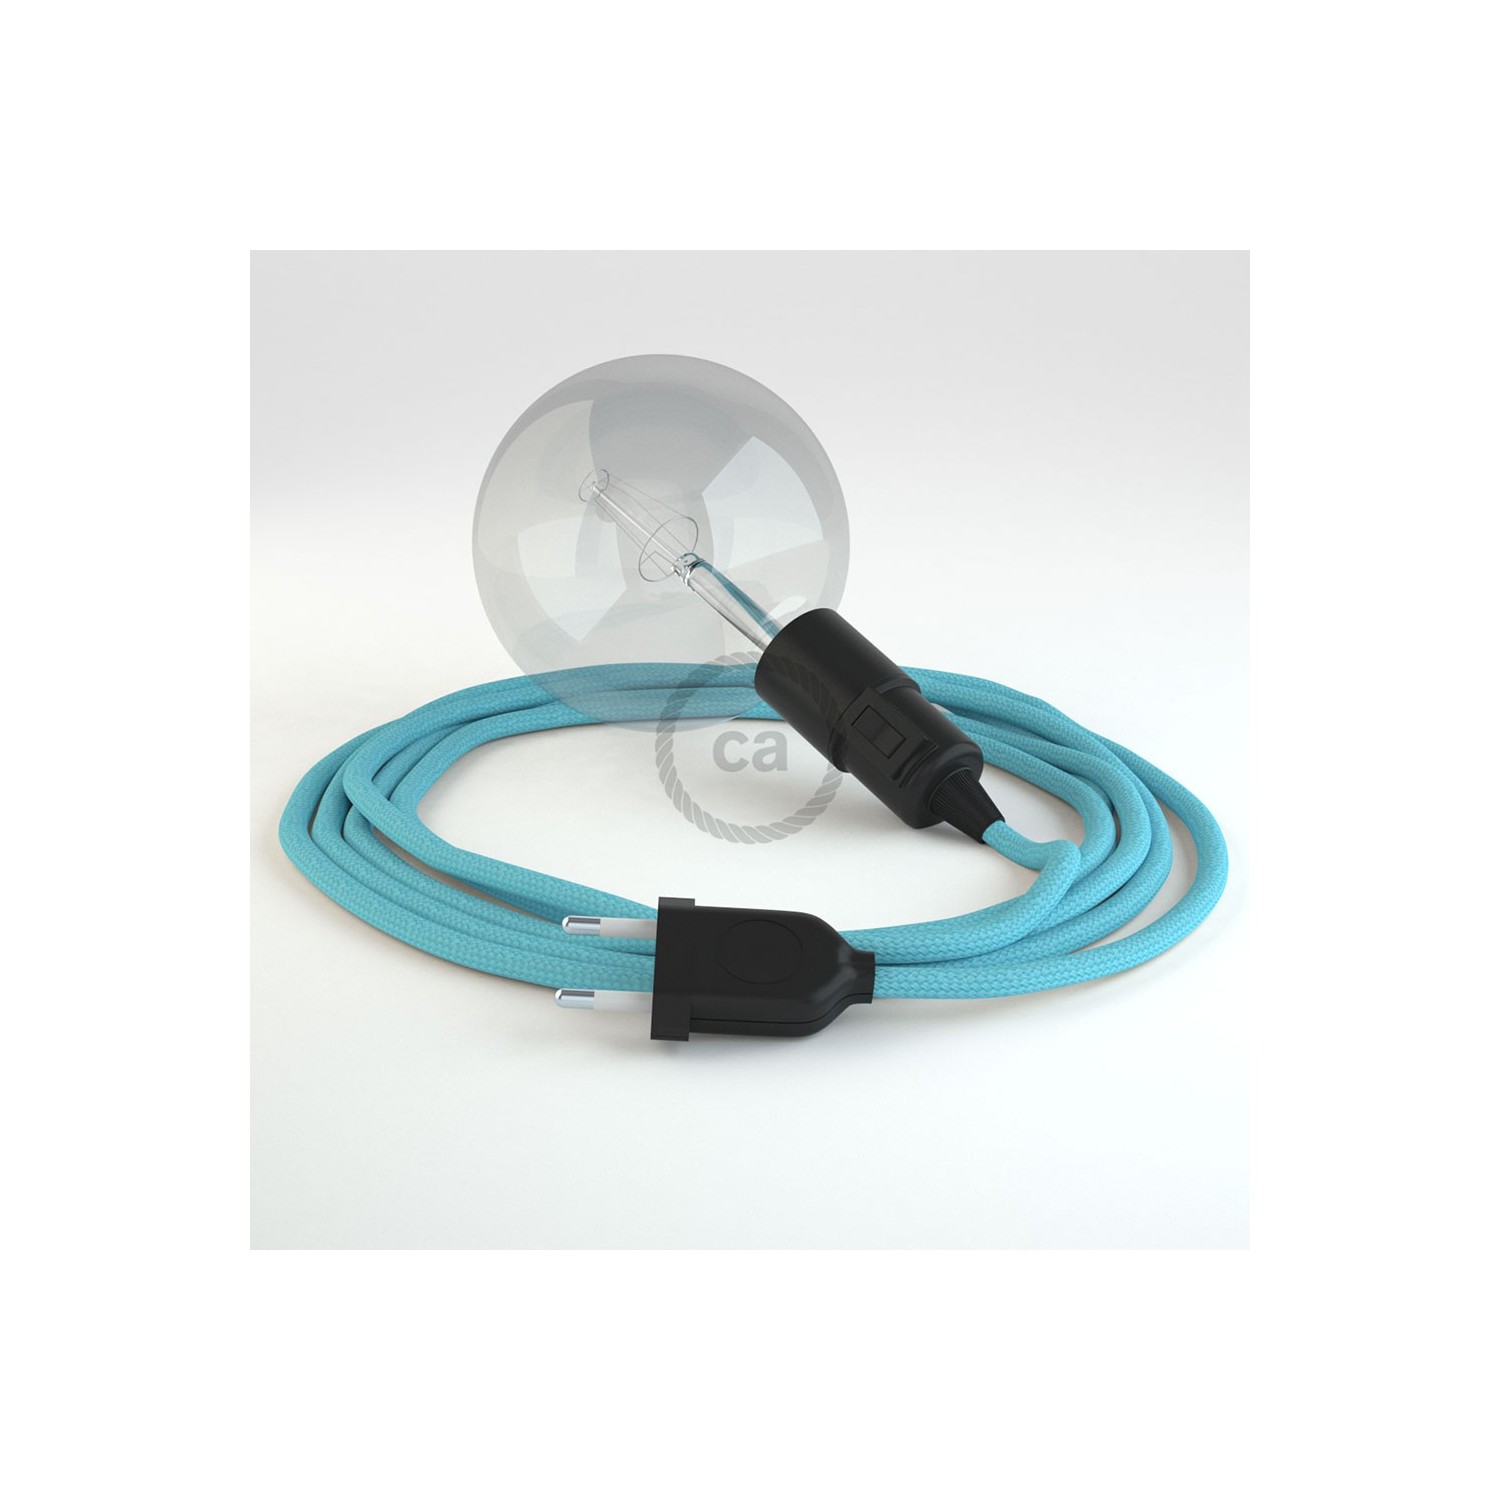 Δημιουργήστε το δικό σας Φωτιστικό Snake με καλώδιο RM17 Γαλάζιο Ρεγιόν και κατευθύνετε το φως εκεί που θέλετε.